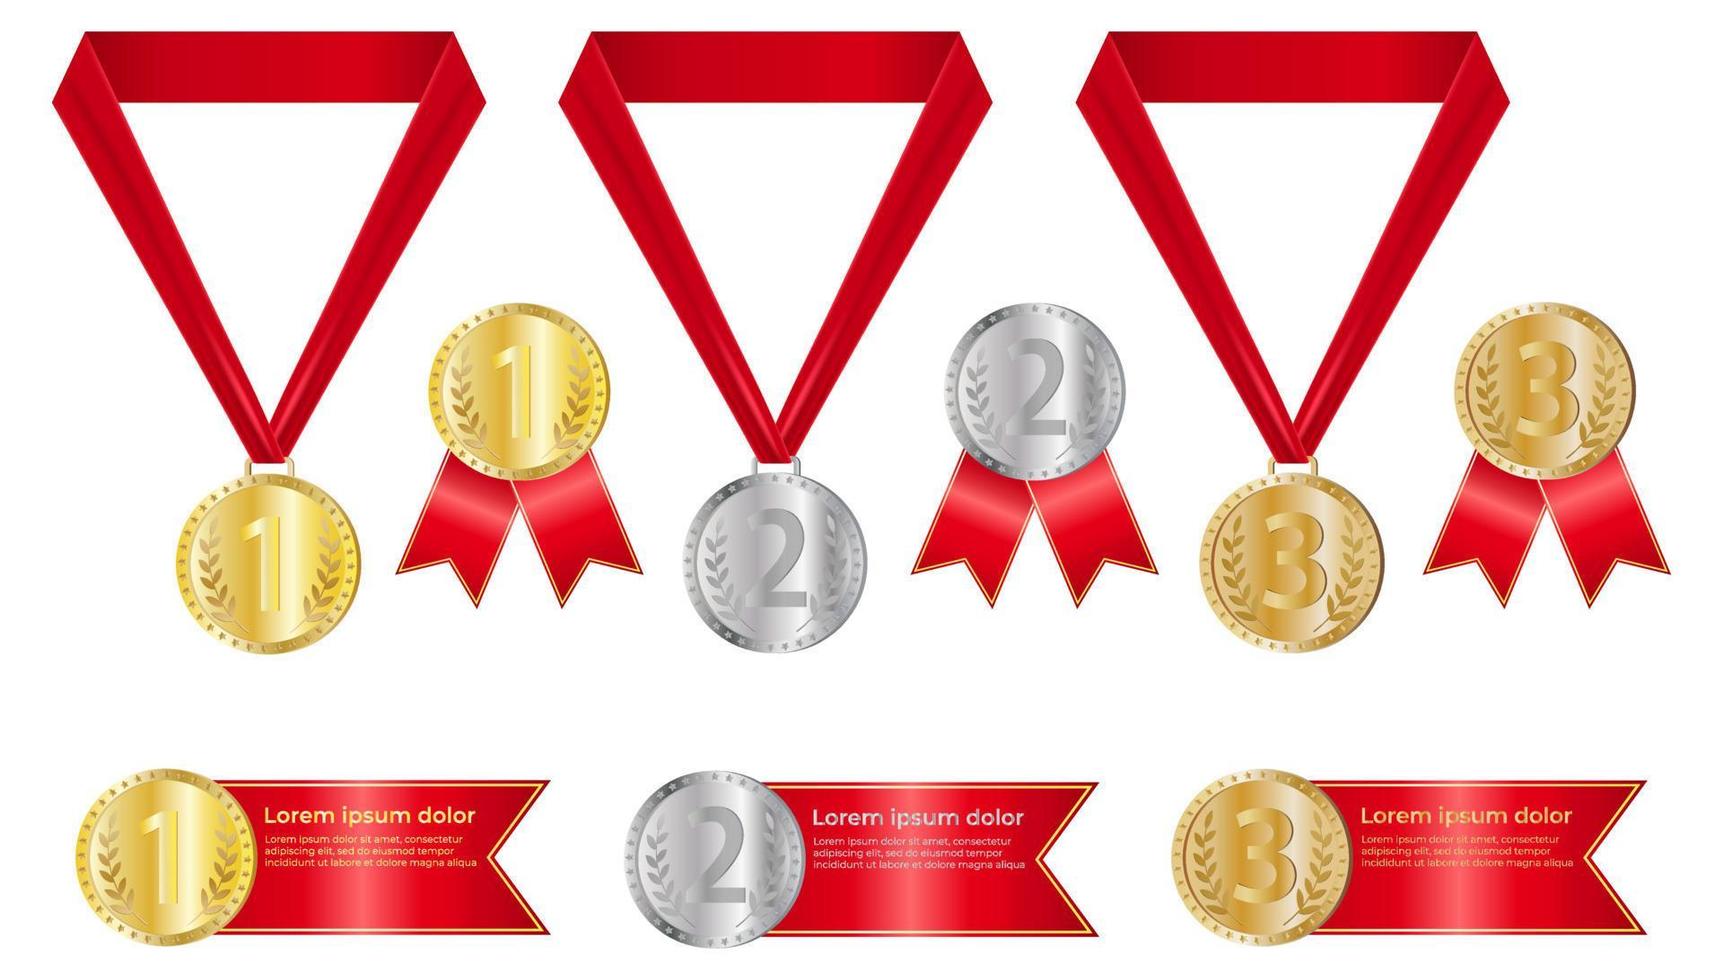 un ensemble de médailles de récompense isolées sur fond blanc. médailles de prix avec rubans rouges. médailles d'or, d'argent et de bronze.. médailles pour la première, deuxième et troisième place. illustration vectorielle réaliste vecteur